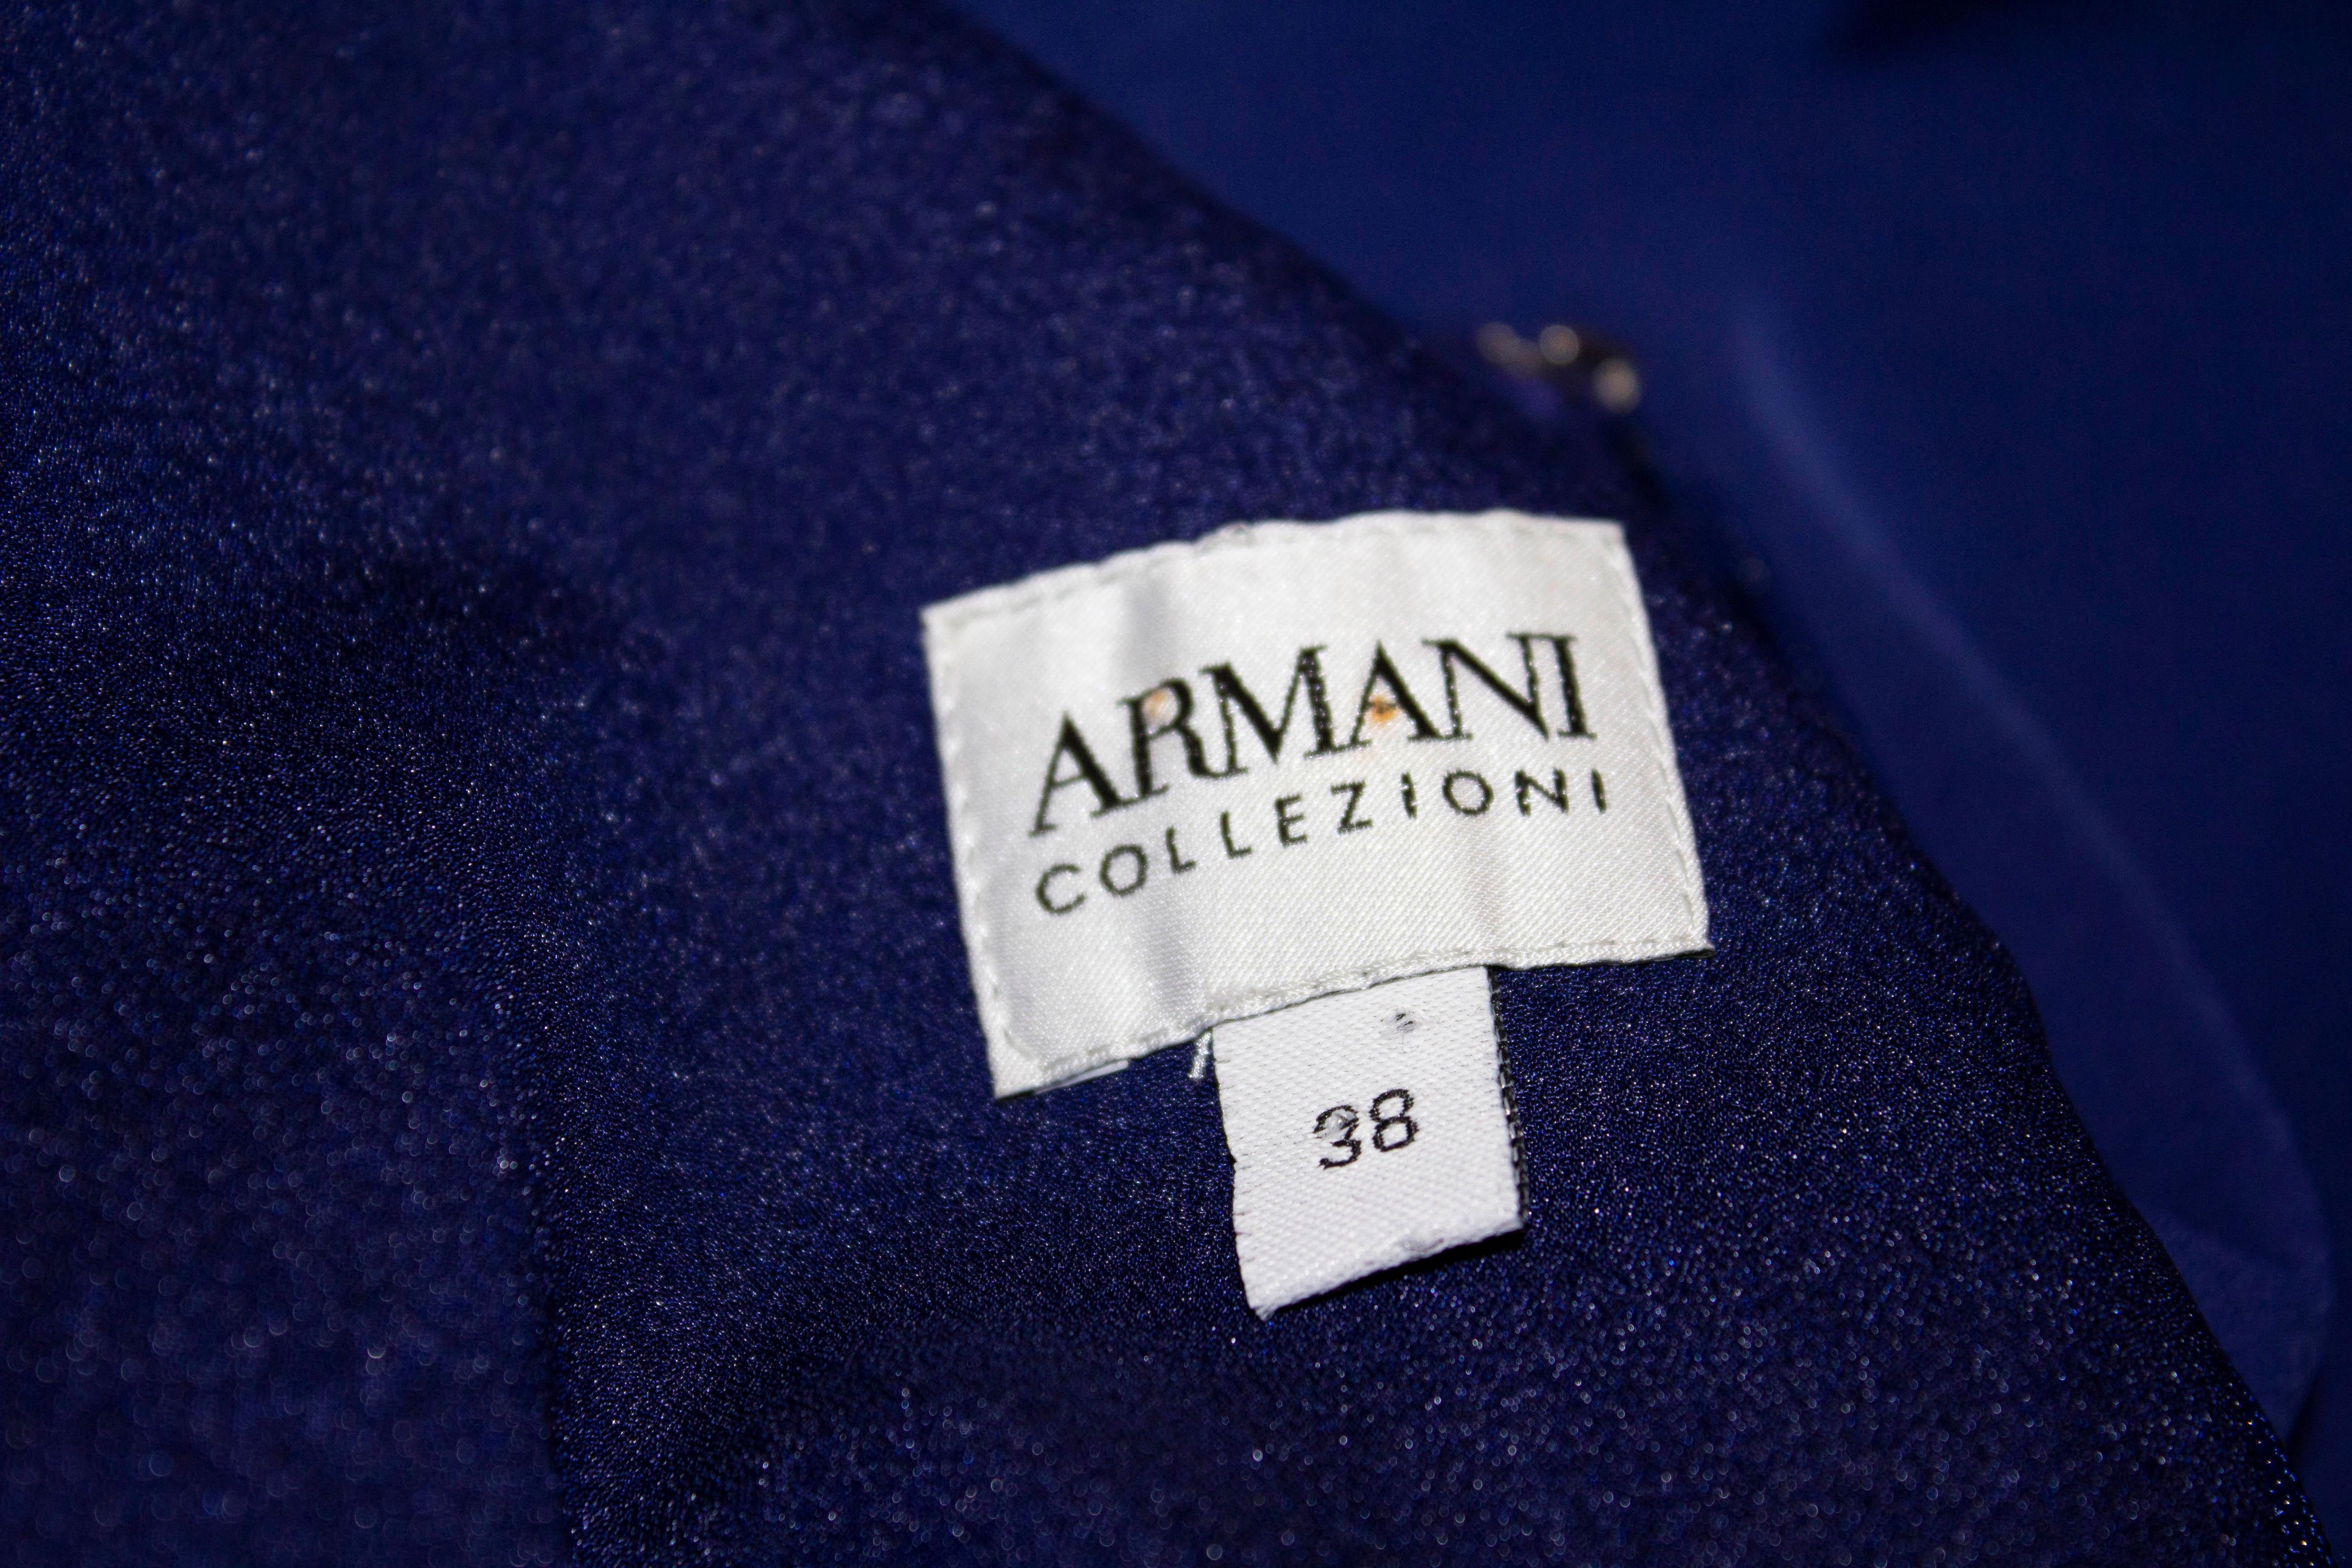 Un chic  robe d'Armani Colezzioni. La robe est d'un magnifique bleu, avec une encolure ronde, des manches aux coudes, des fronces sur le côté gauche et une fermeture éclair centrale au dos. Elle est doublée et comporte des épaulettes. Taille 38